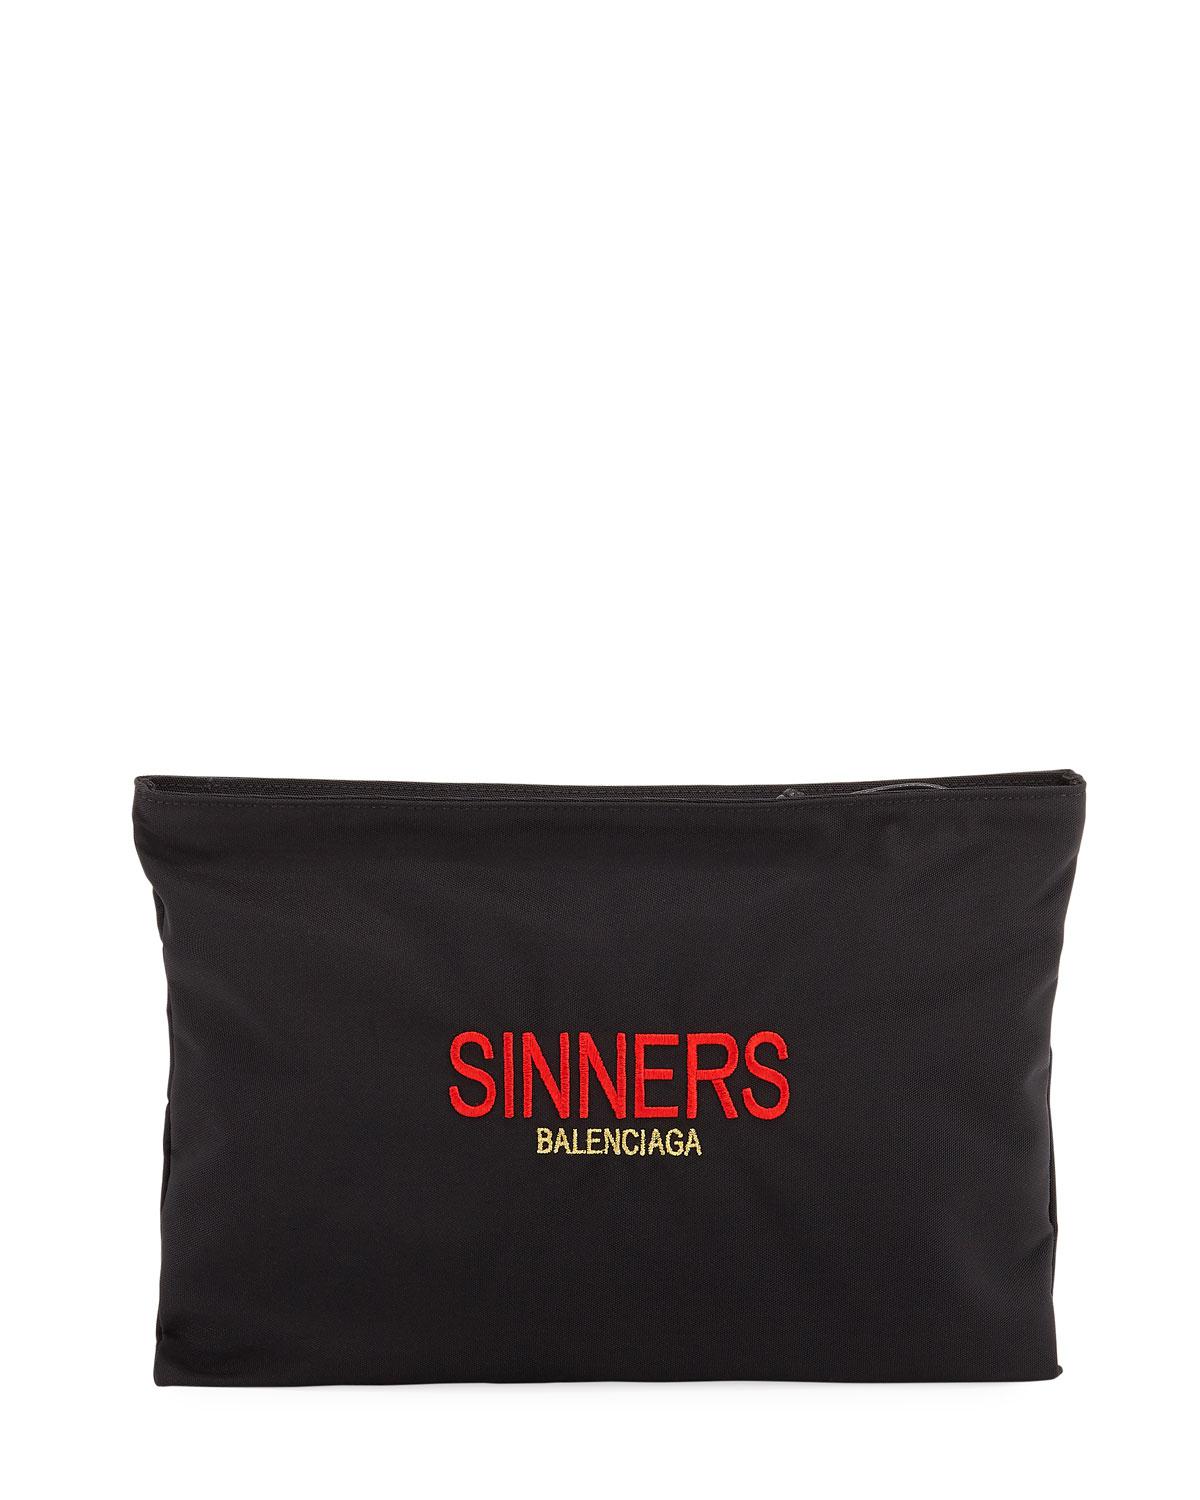 Balenciaga Sinners Carry Clip 